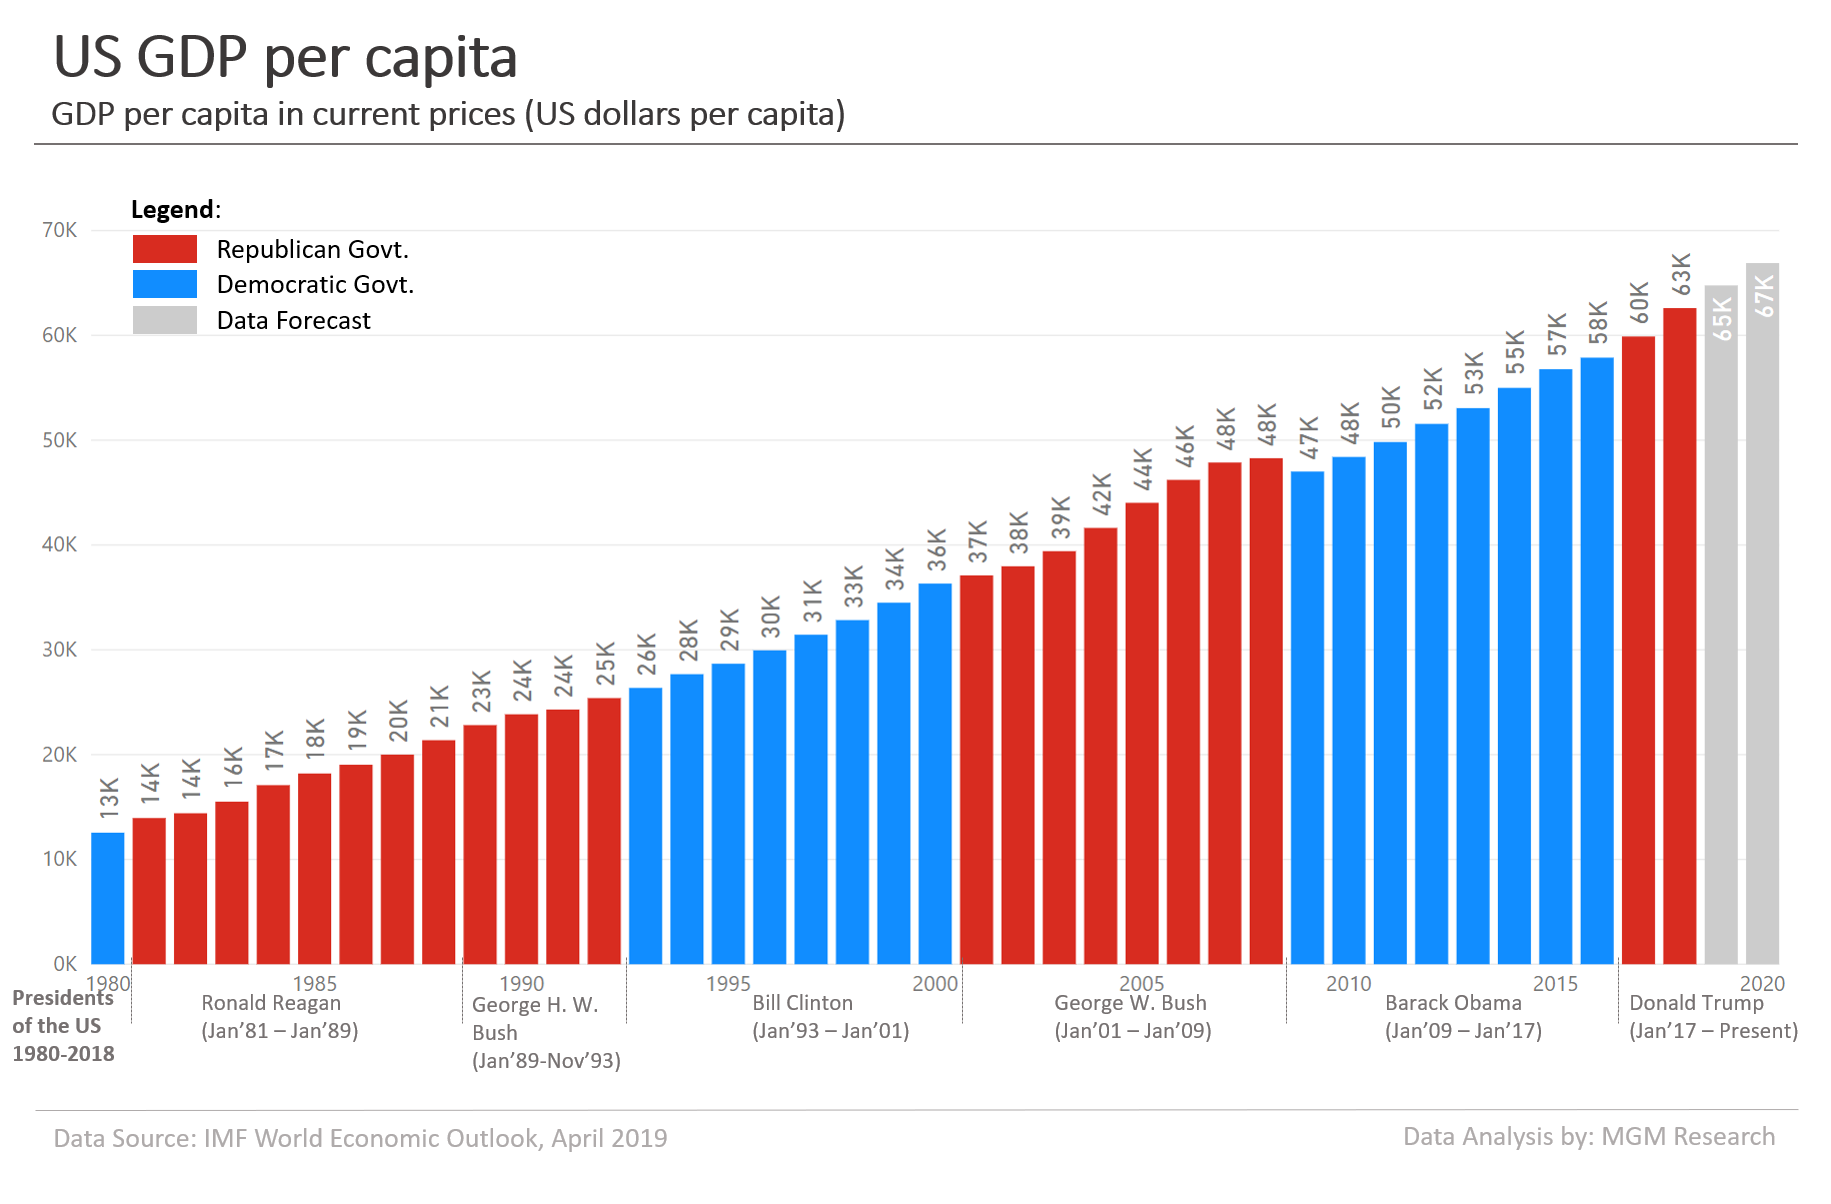 US GDP per capita 1980-2020 2